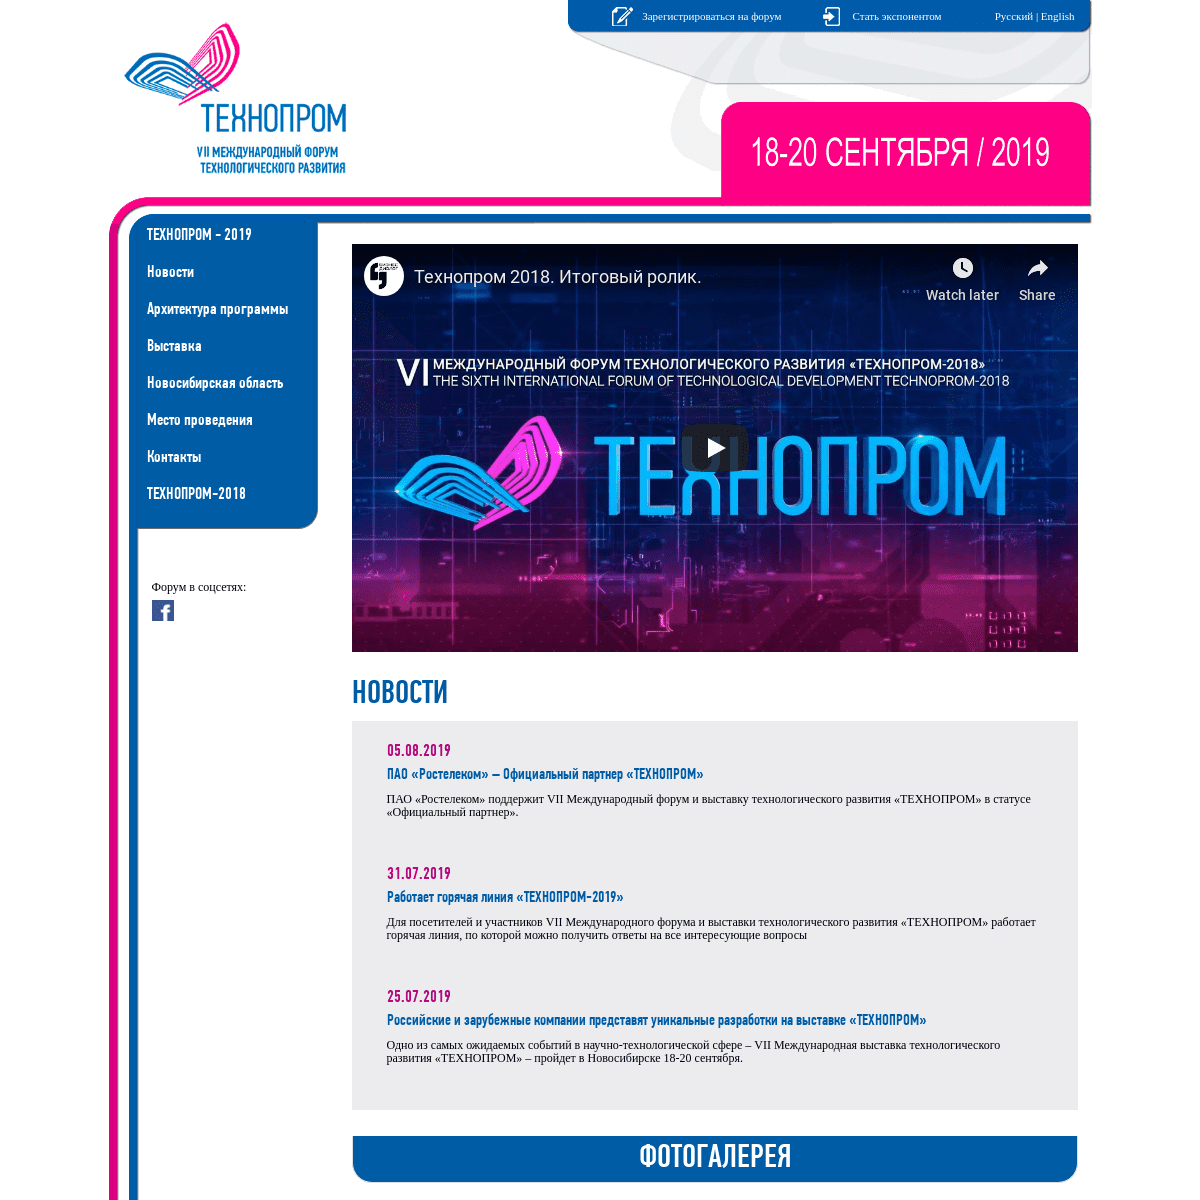 VII Международный форум и выставка технологического развития «Технопром-2018»